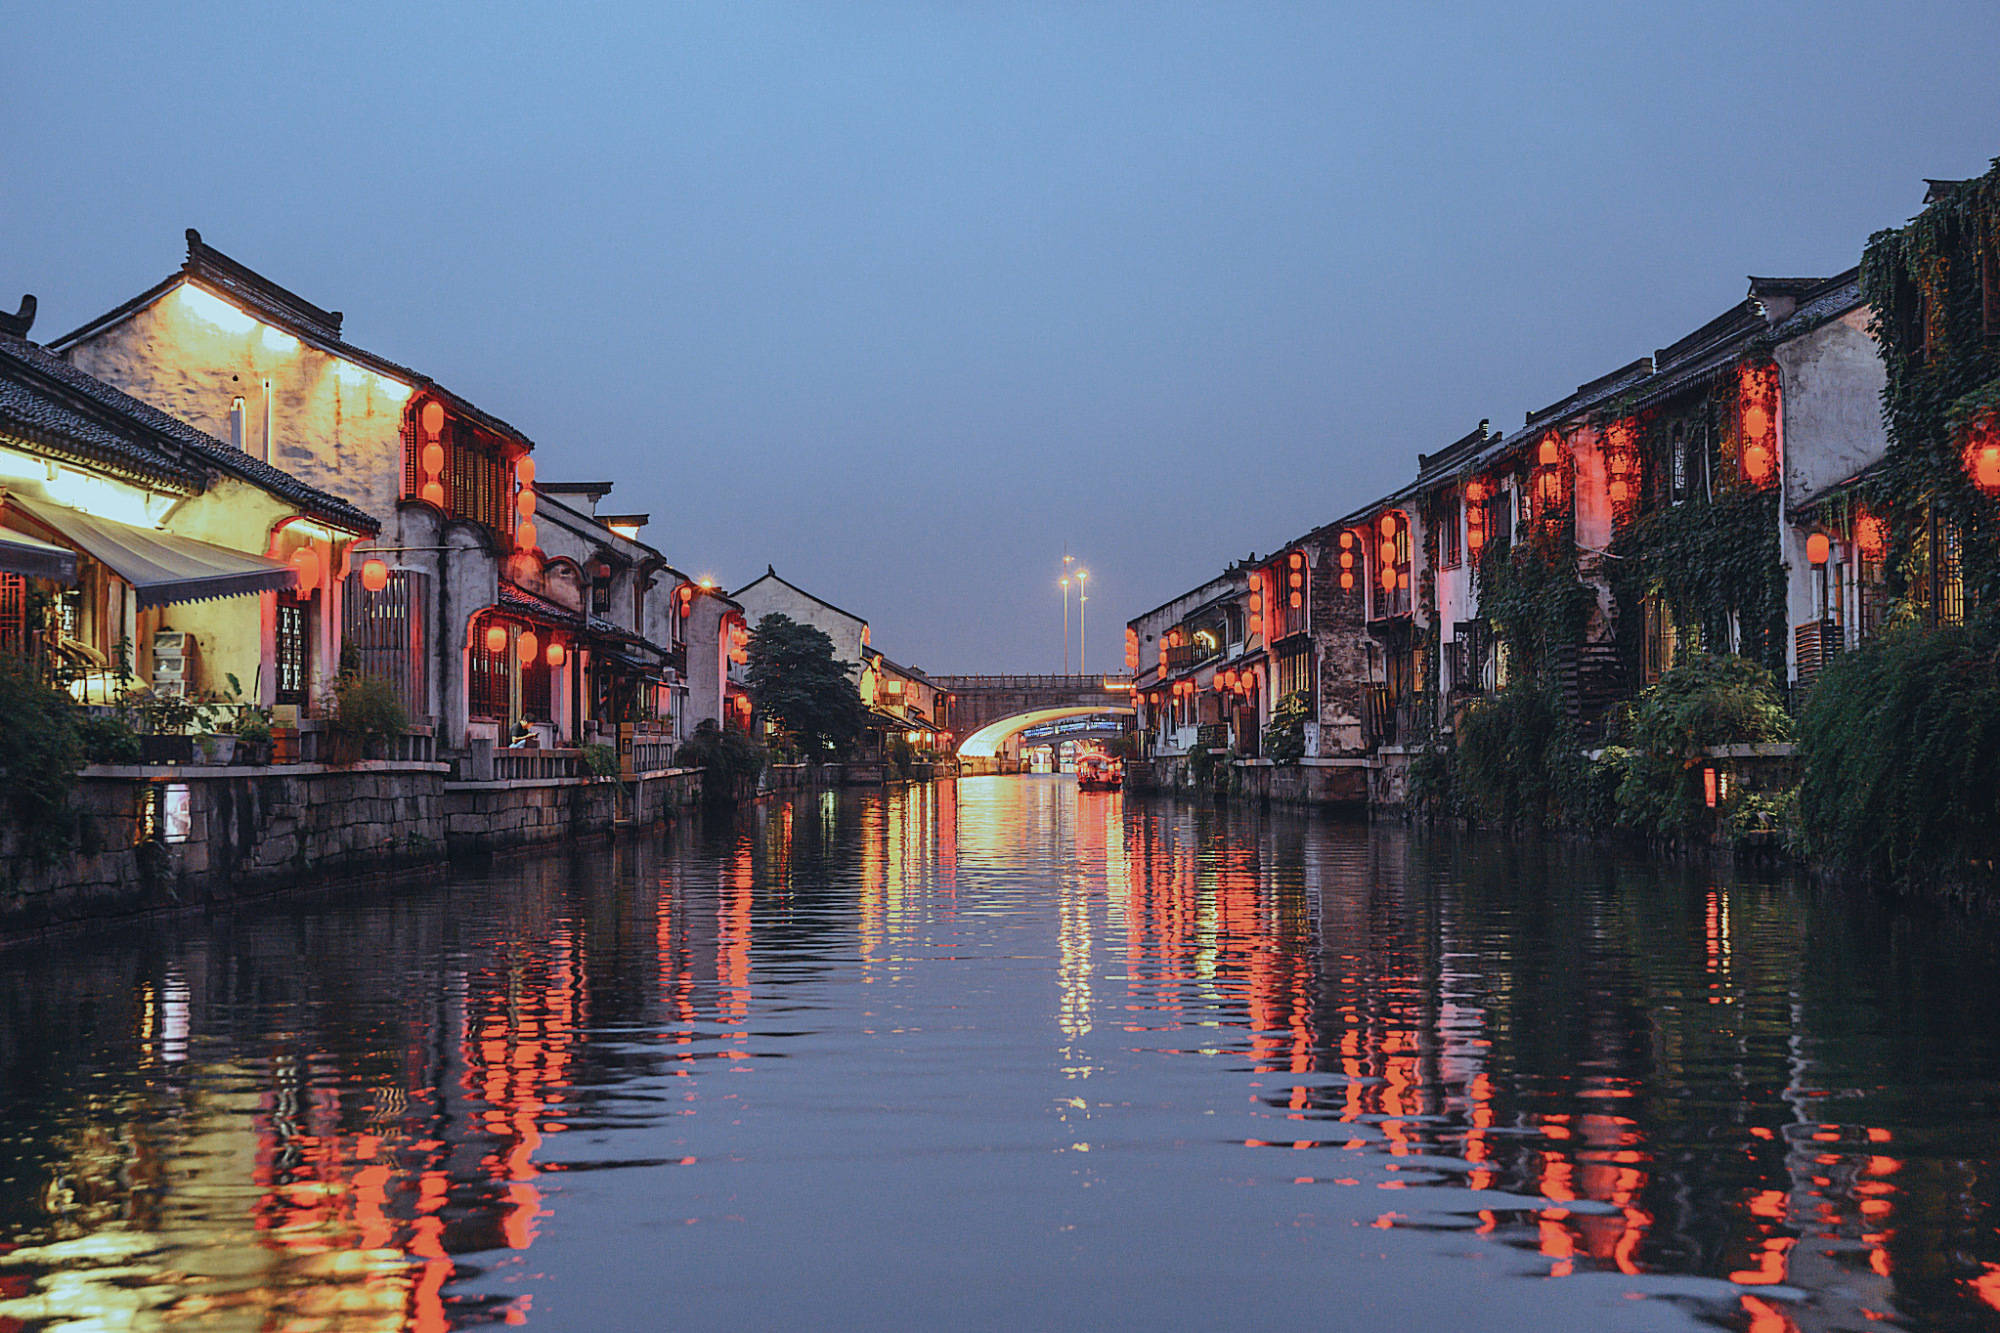 原创实拍无锡千年古运河沿岸景观夜色撩人比南京秦淮河景色还美